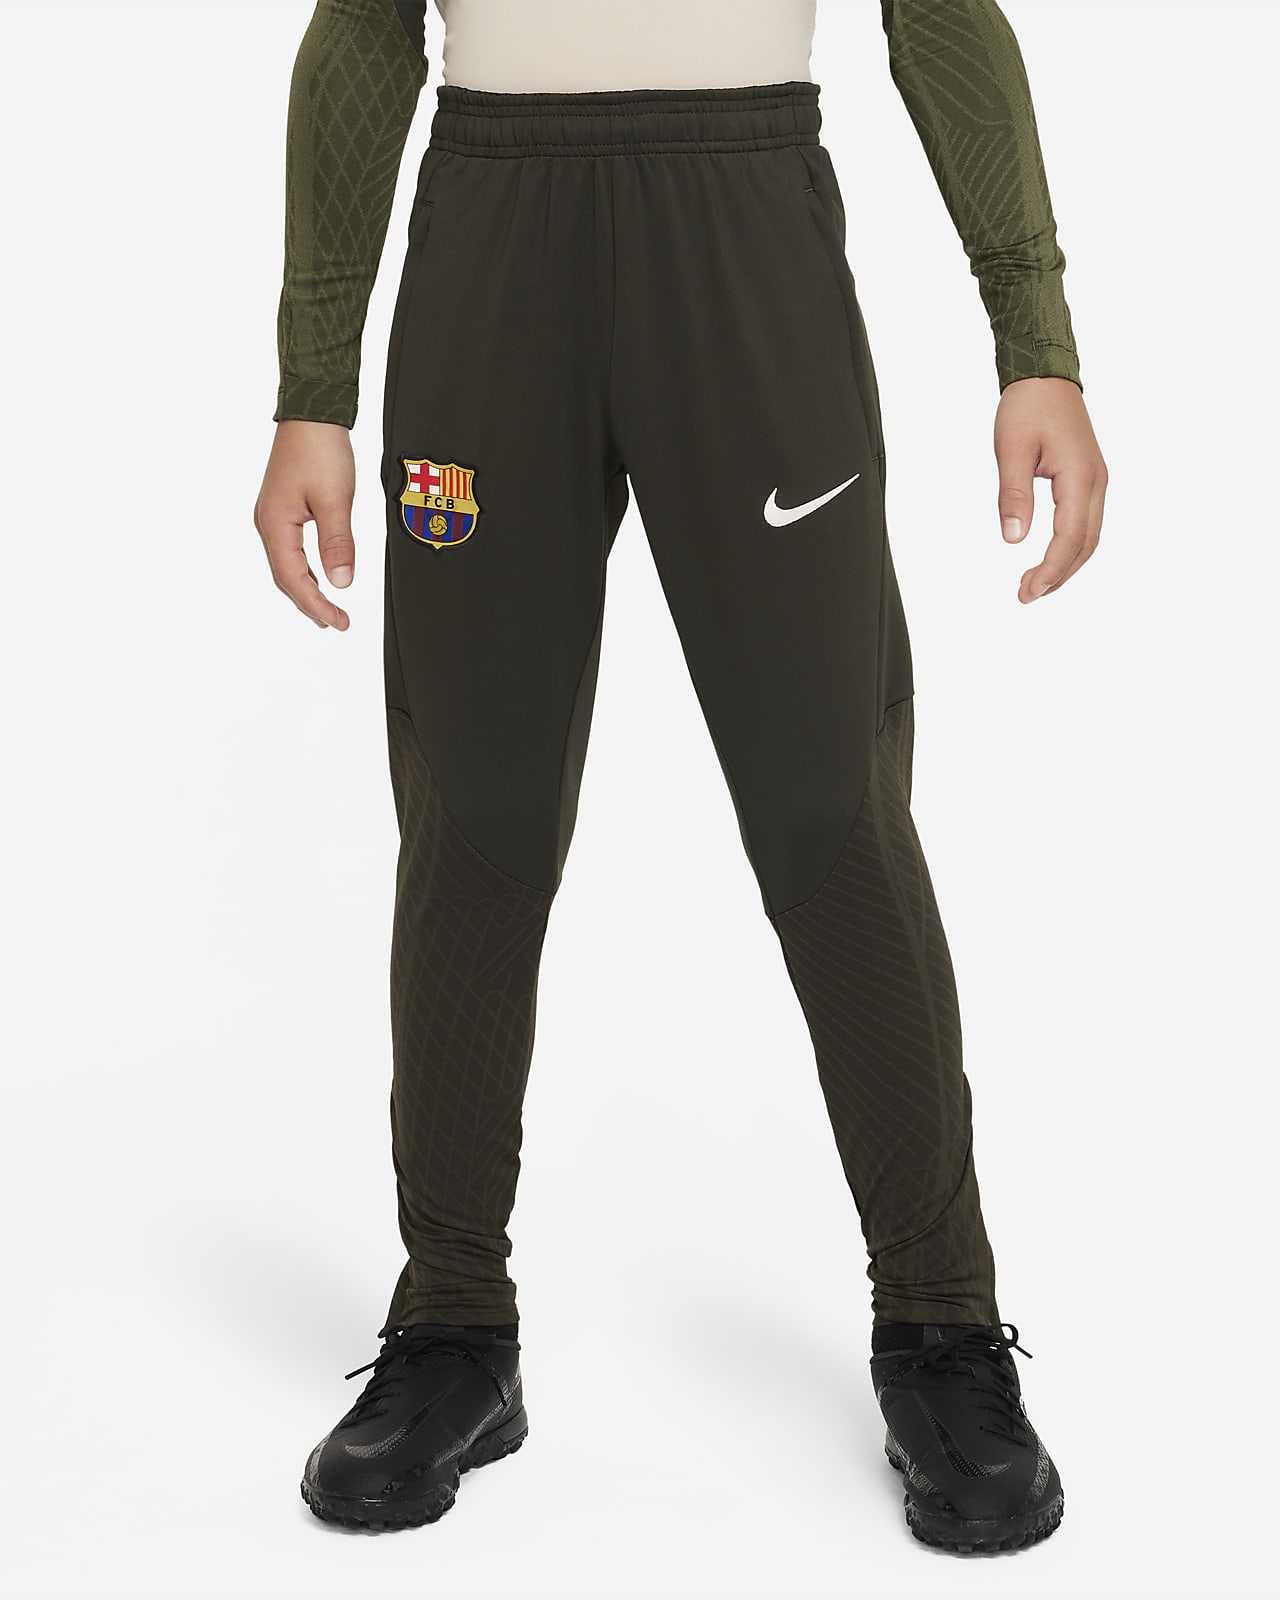 Πλεκτό ποδοσφαιρικό παντελόνι Nike Dri-FIT Μπαρτσελόνα Strike για μεγάλα παιδιά